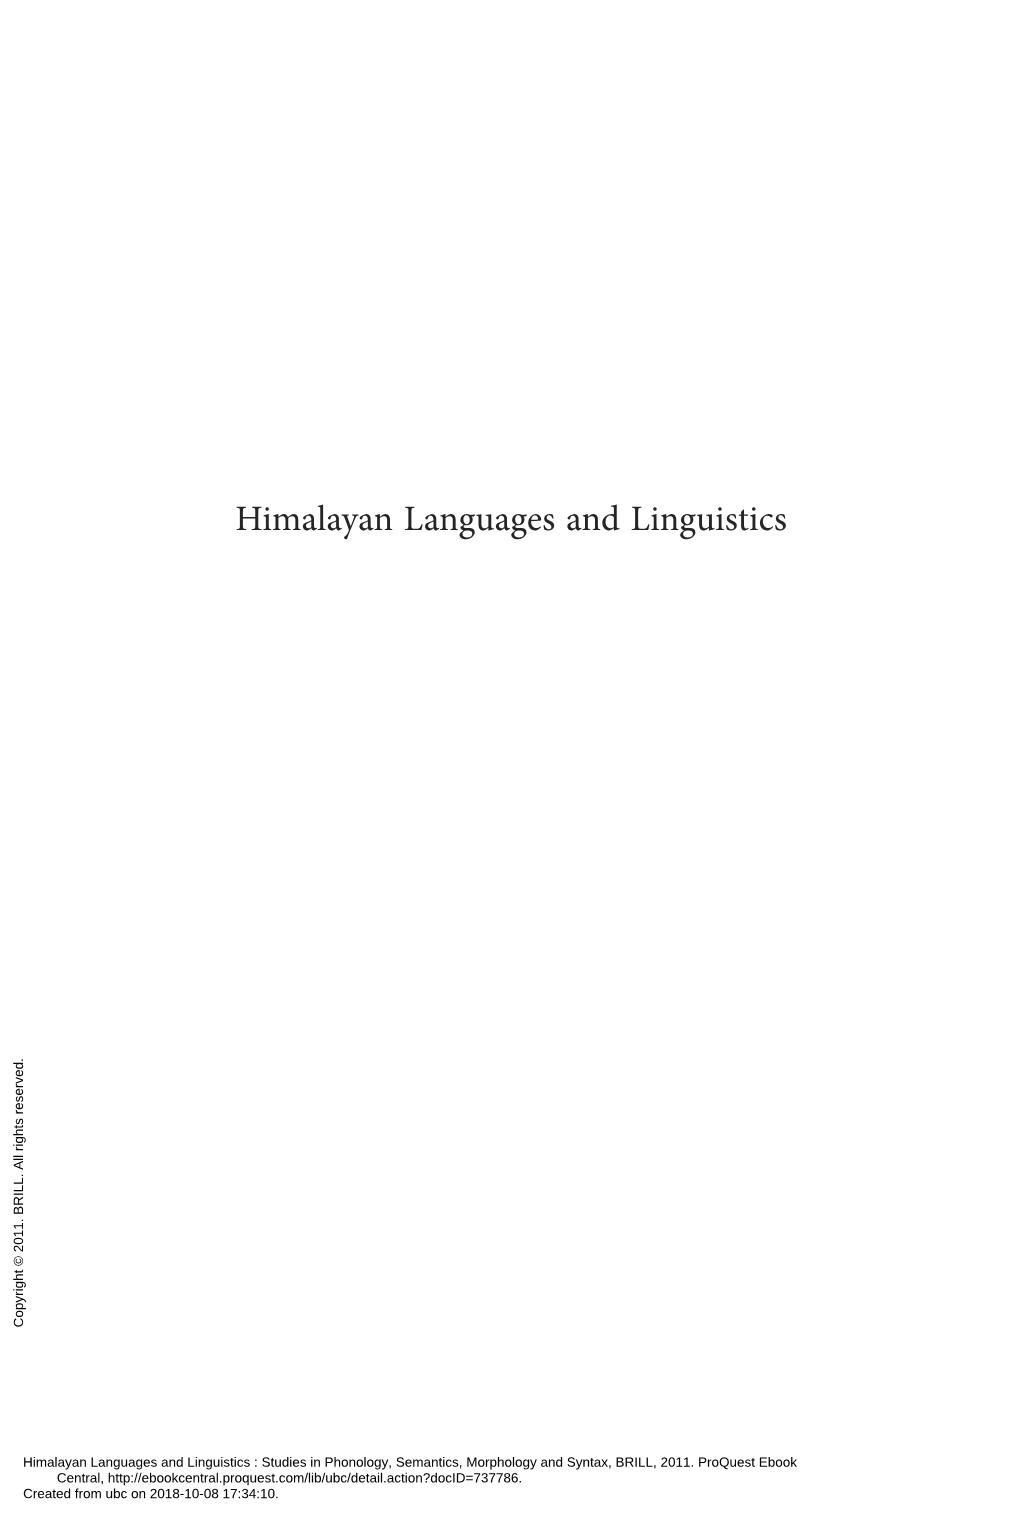 Himalayan Languages and Linguistics Copyright © 2011